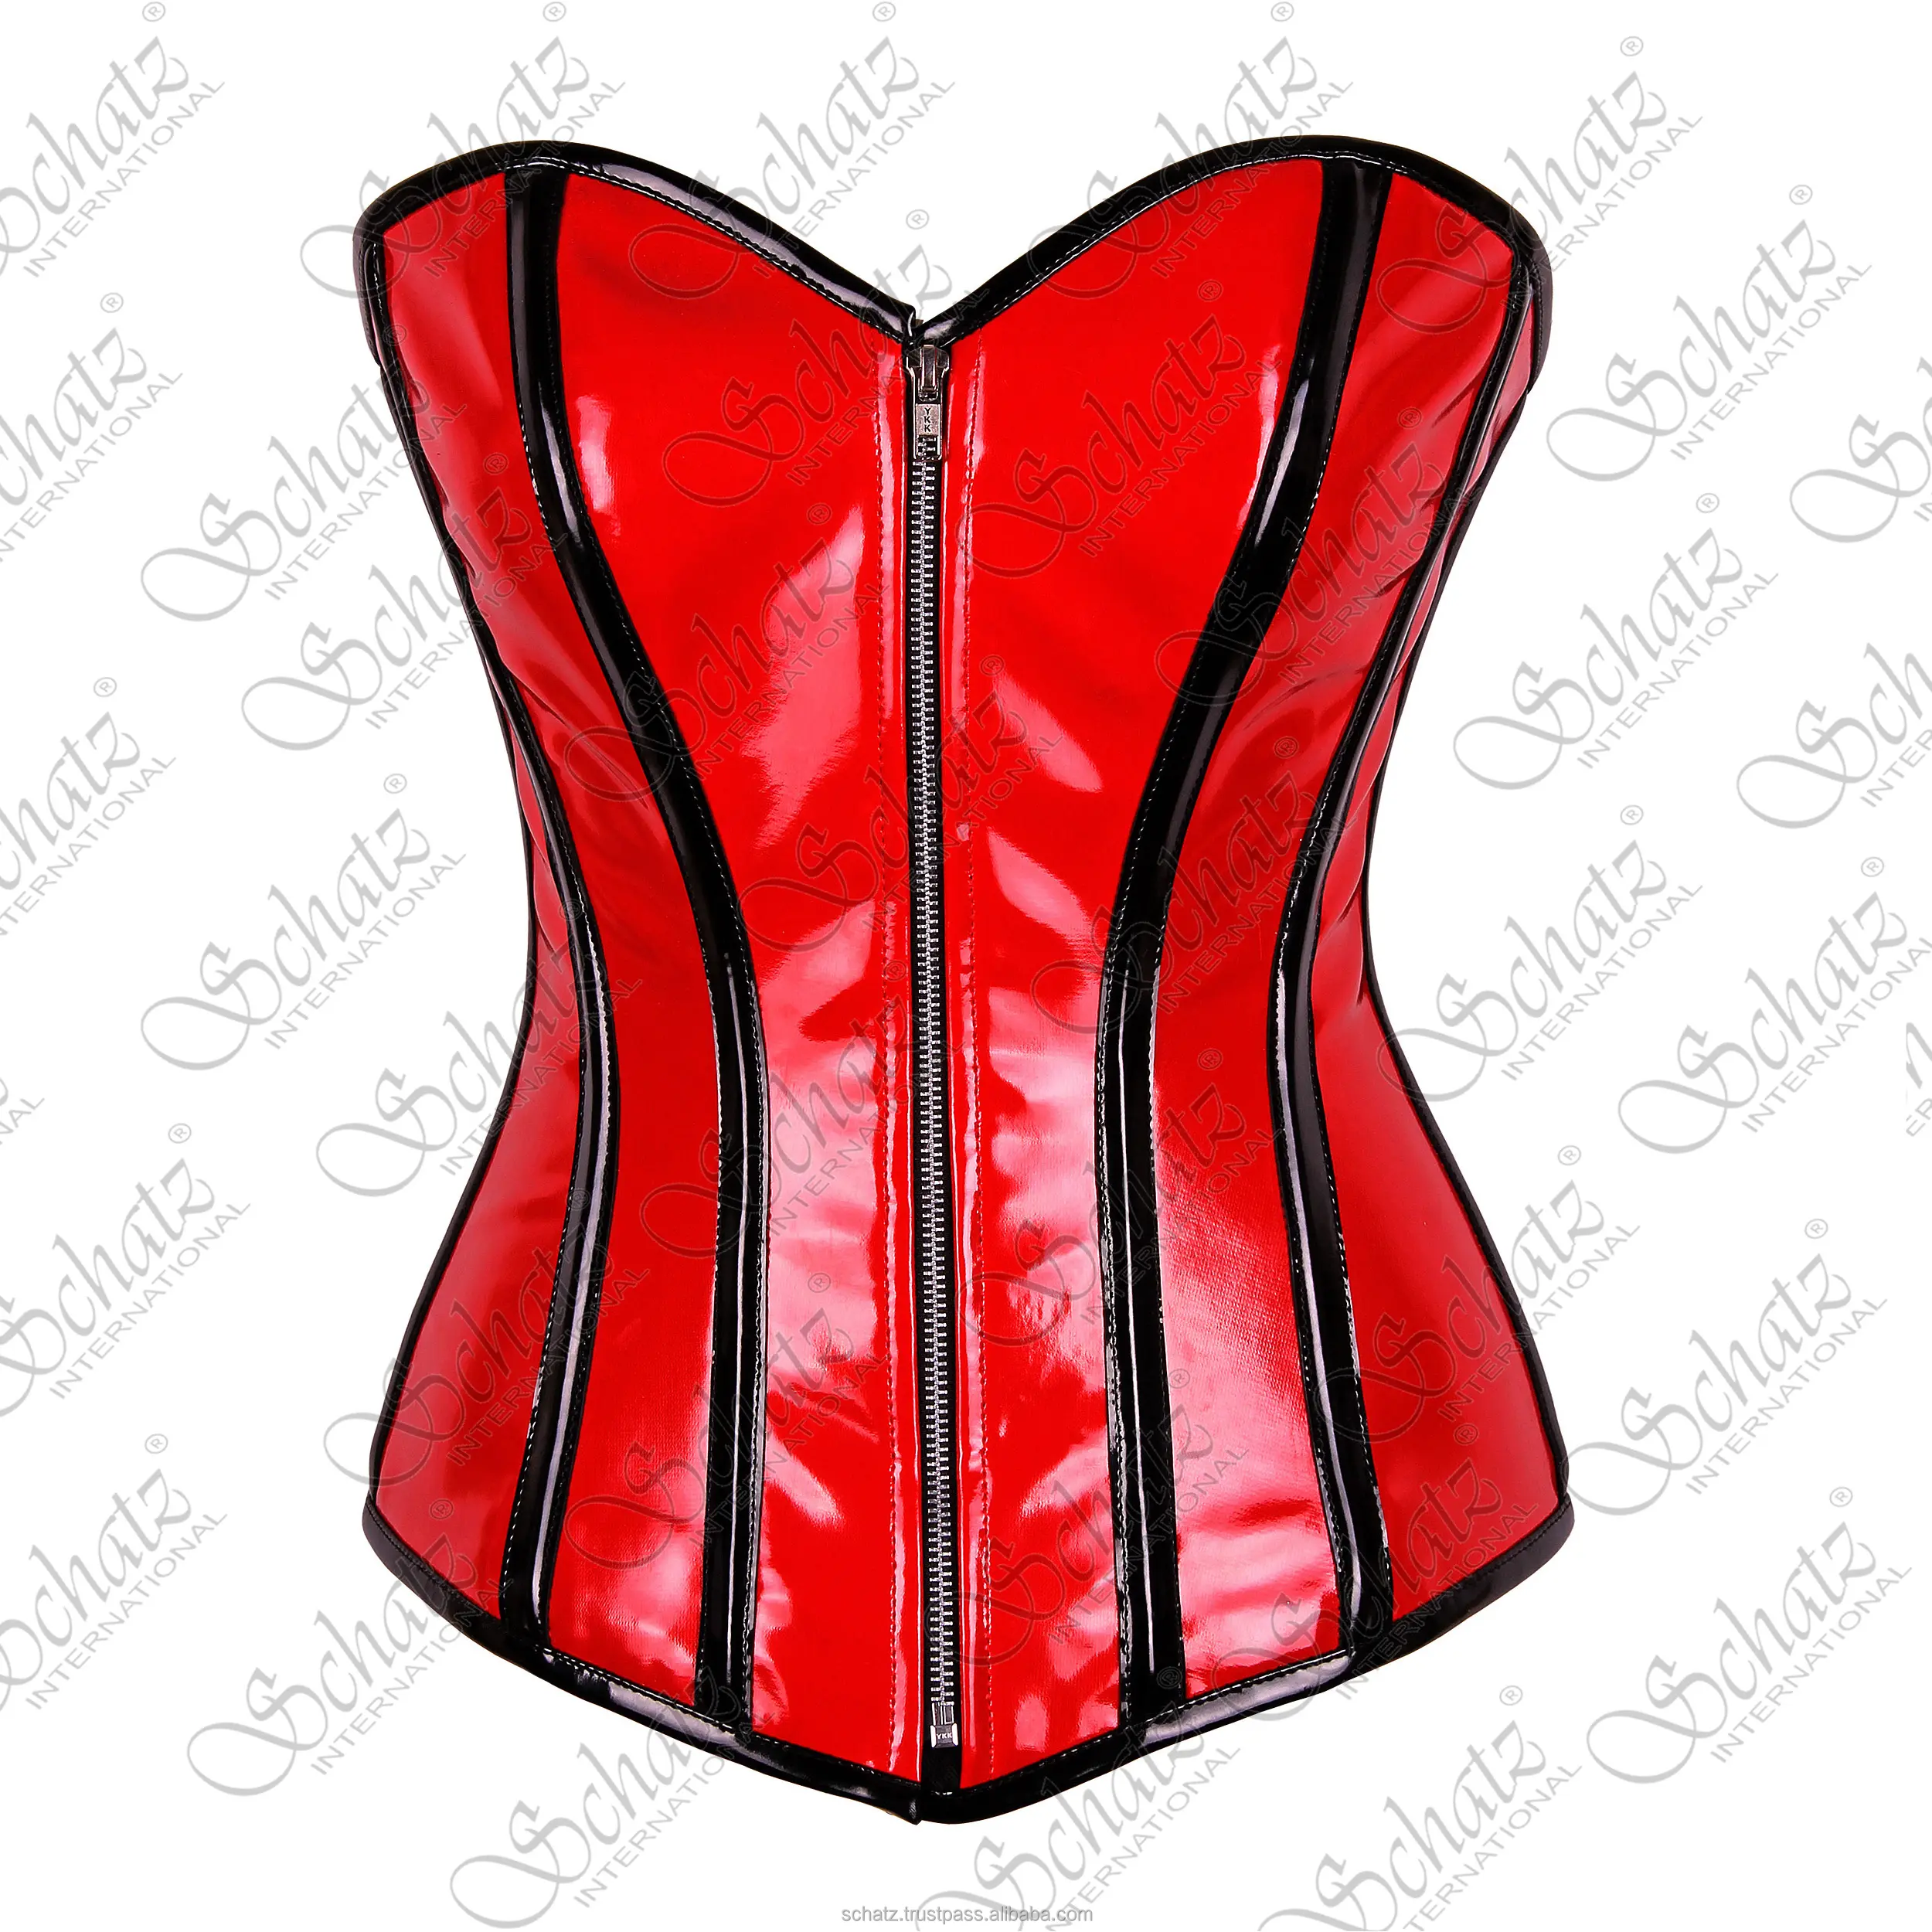 Neue Mode und Party-Kleidung Korsett Oberteil Überbau stahlgelenktes rotes PVC-Korsett mit PVC-Besenung und Zier schweres Korsettkleid